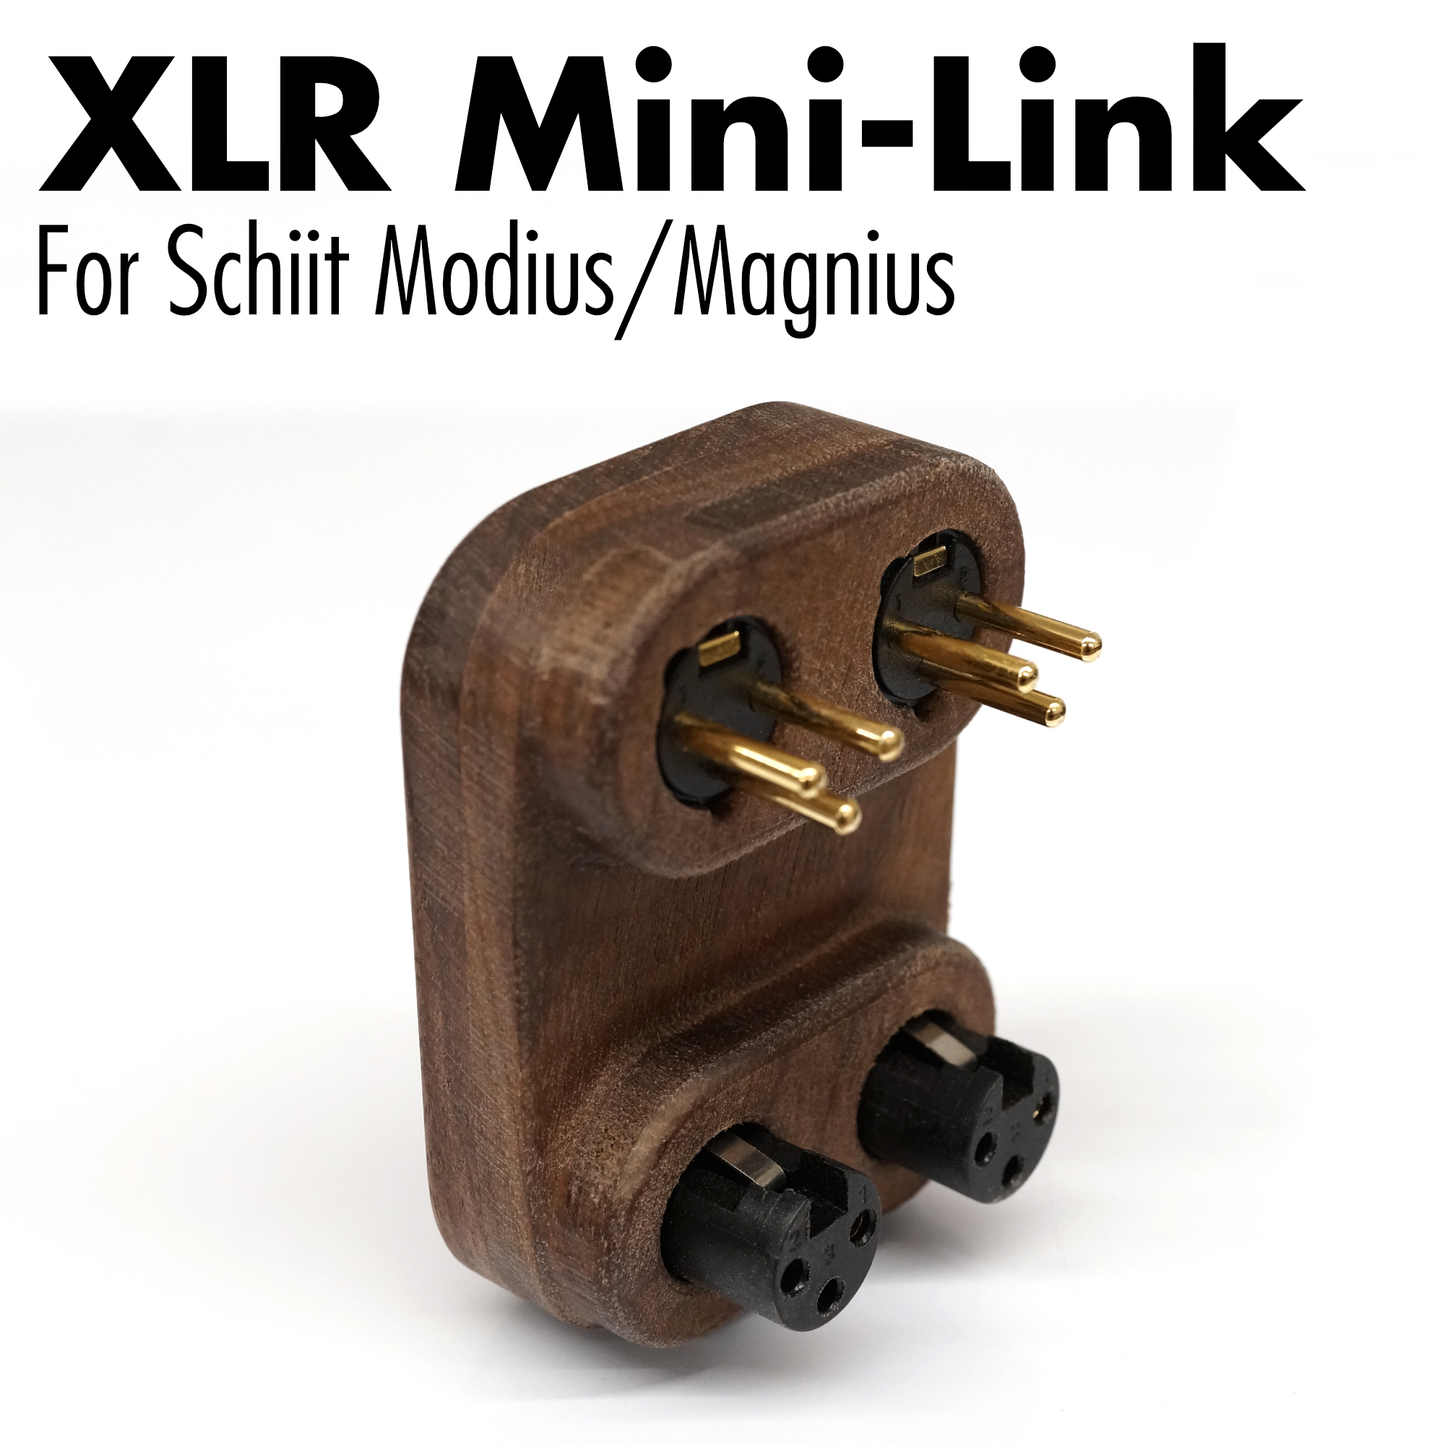 Mini-Link XLR for Schiit Modius/Magnius